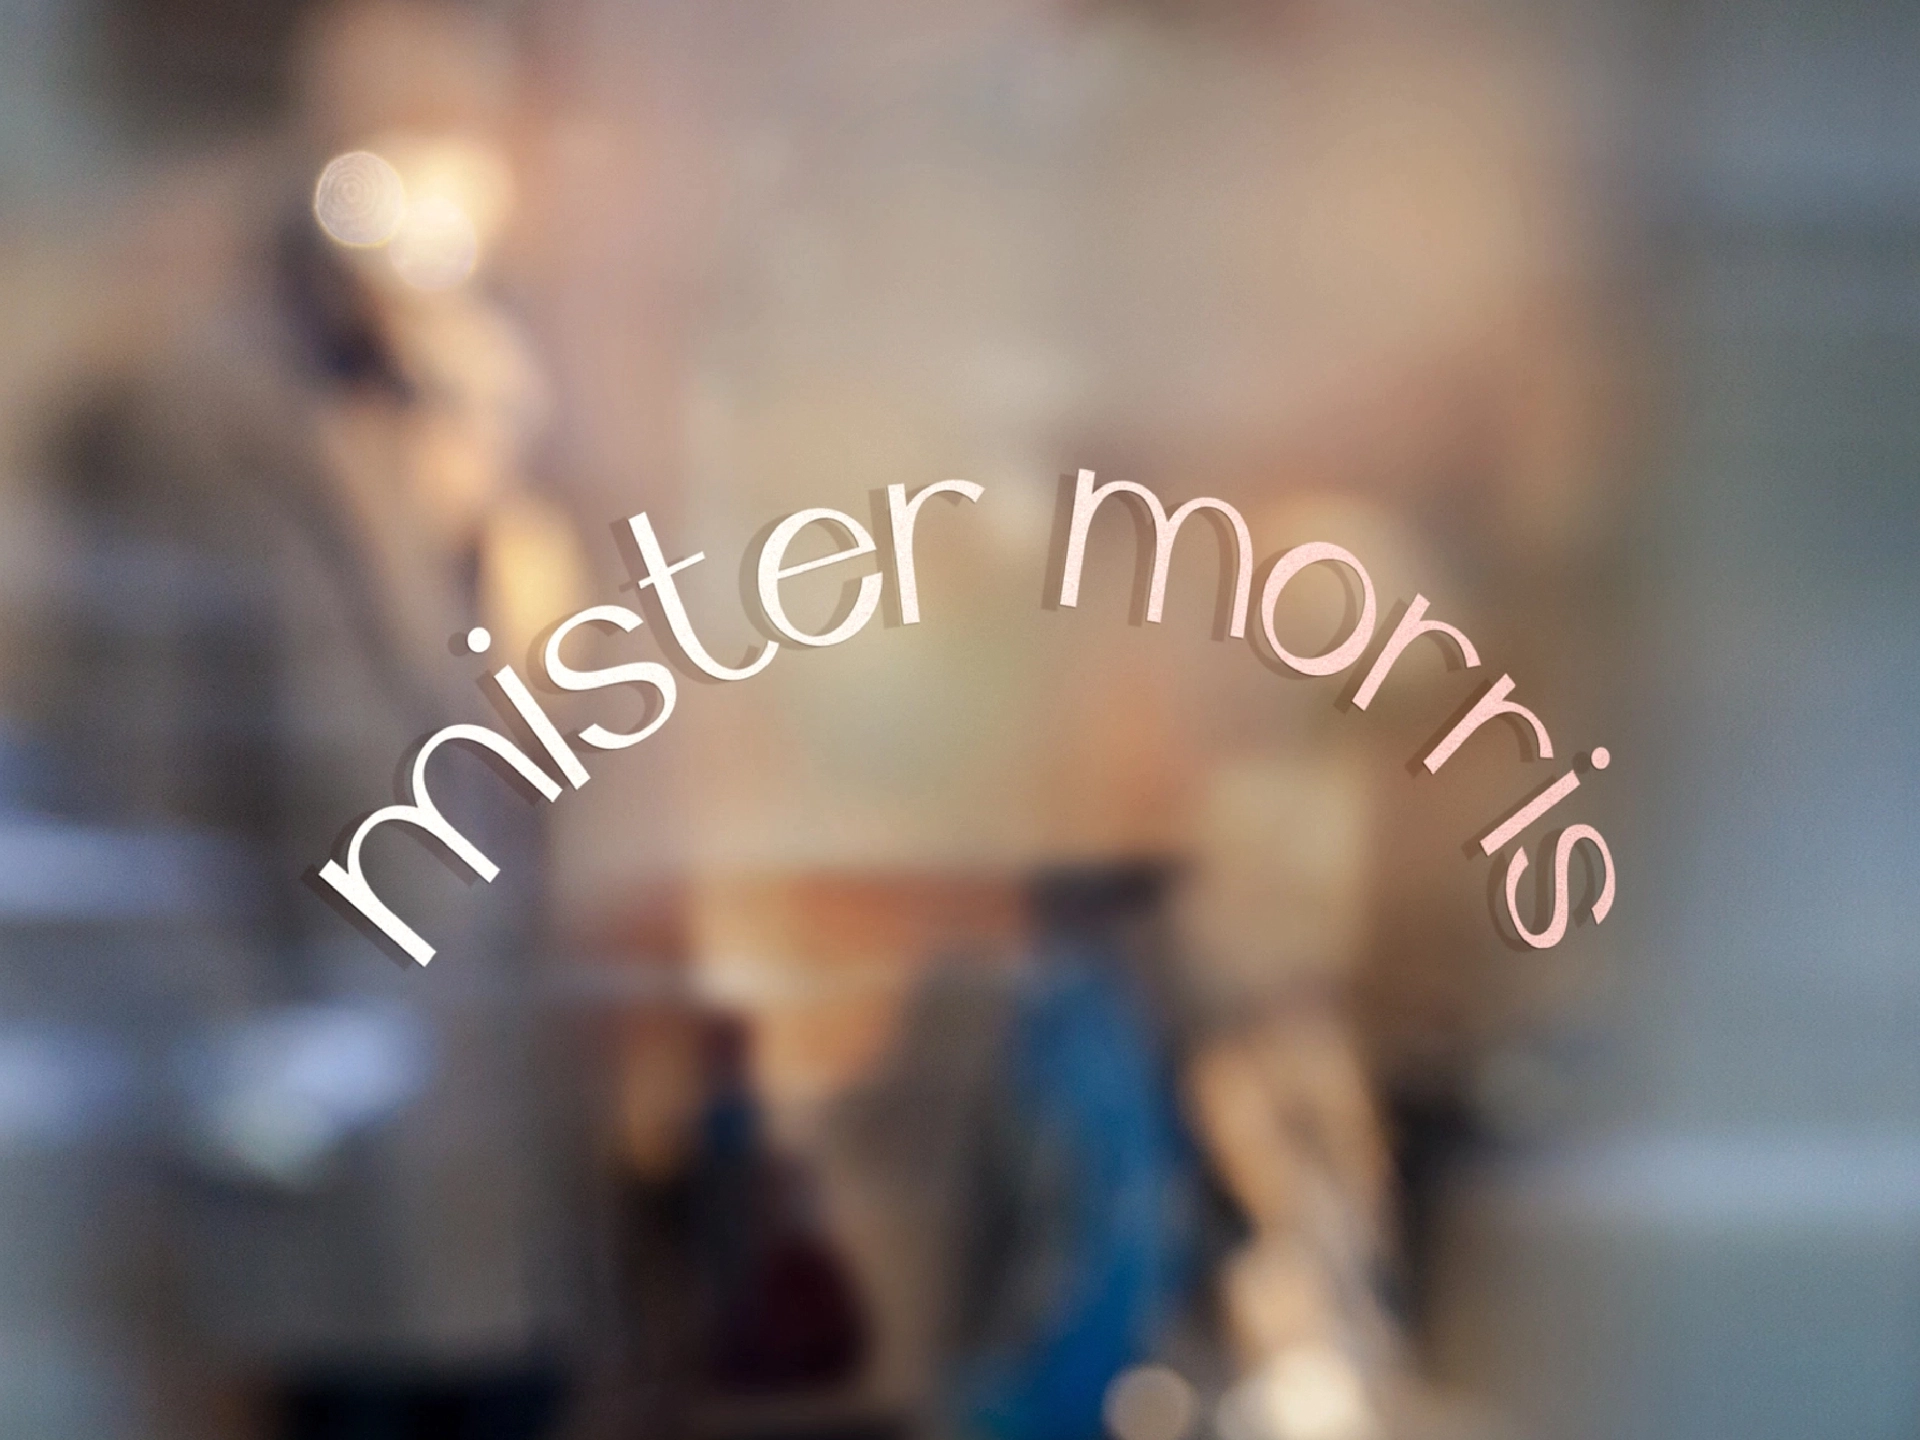 Mister Morris social logo on window